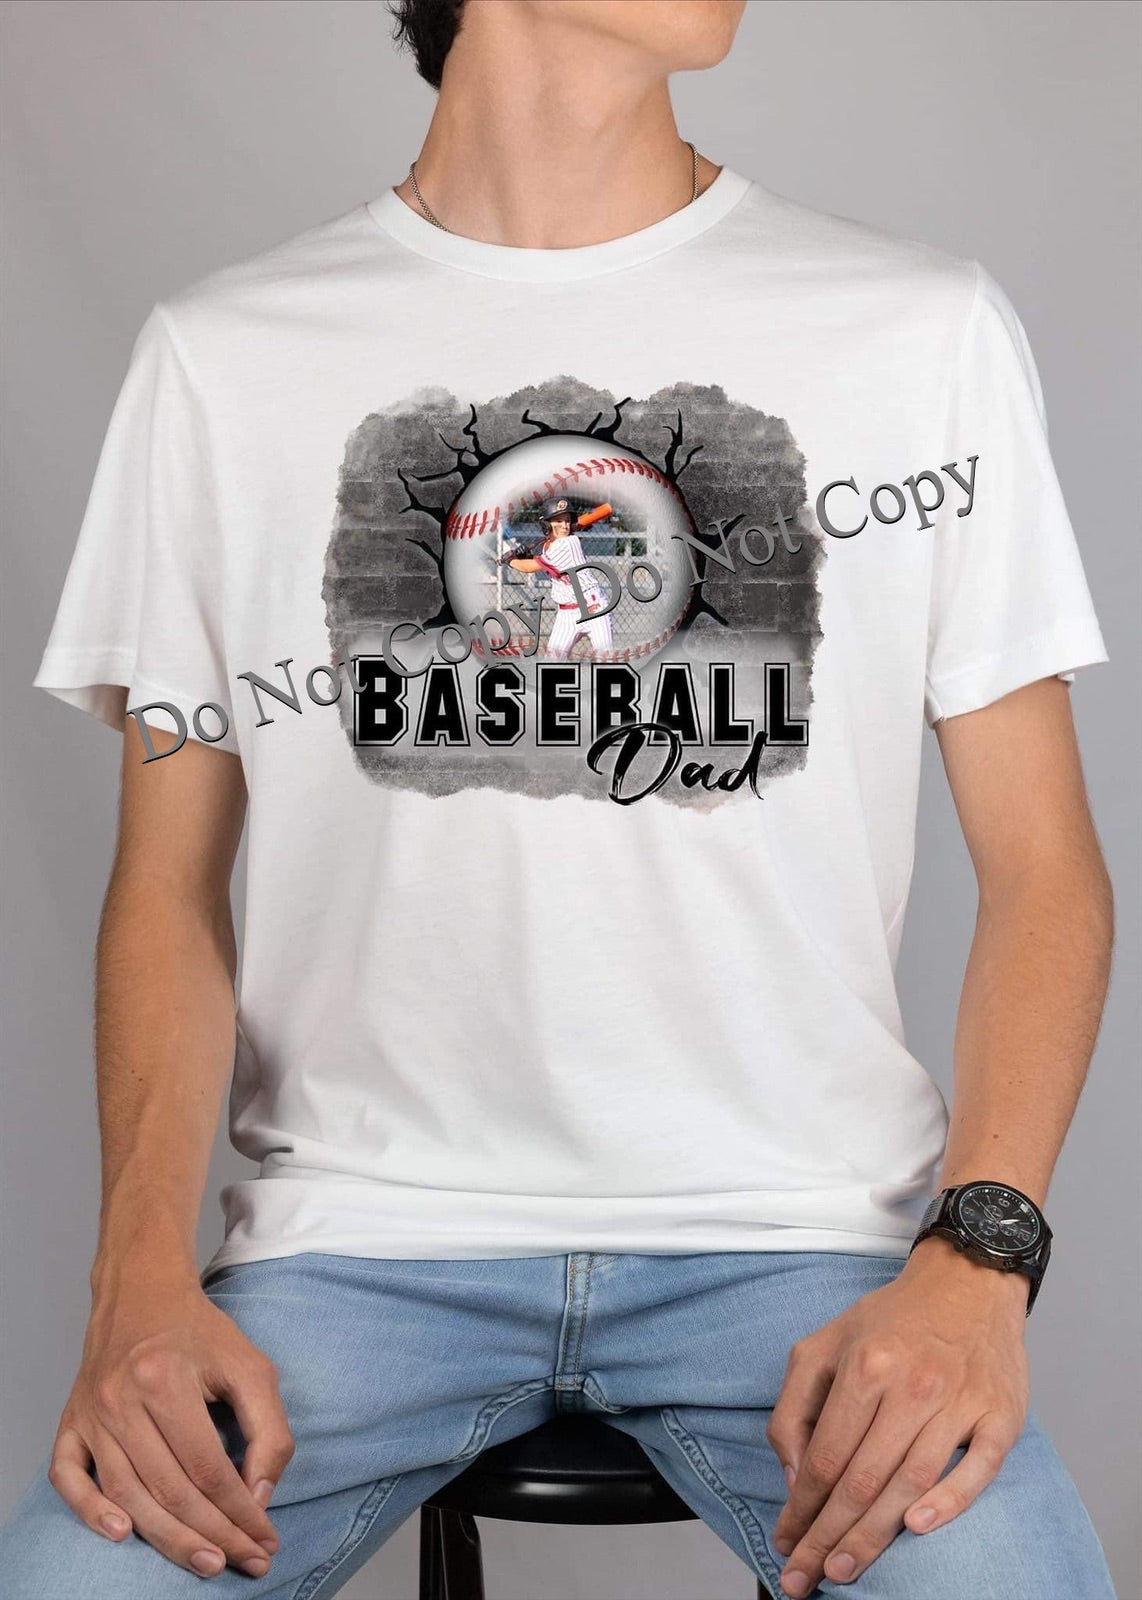 Personalized Photo Baseball Dad Shirts